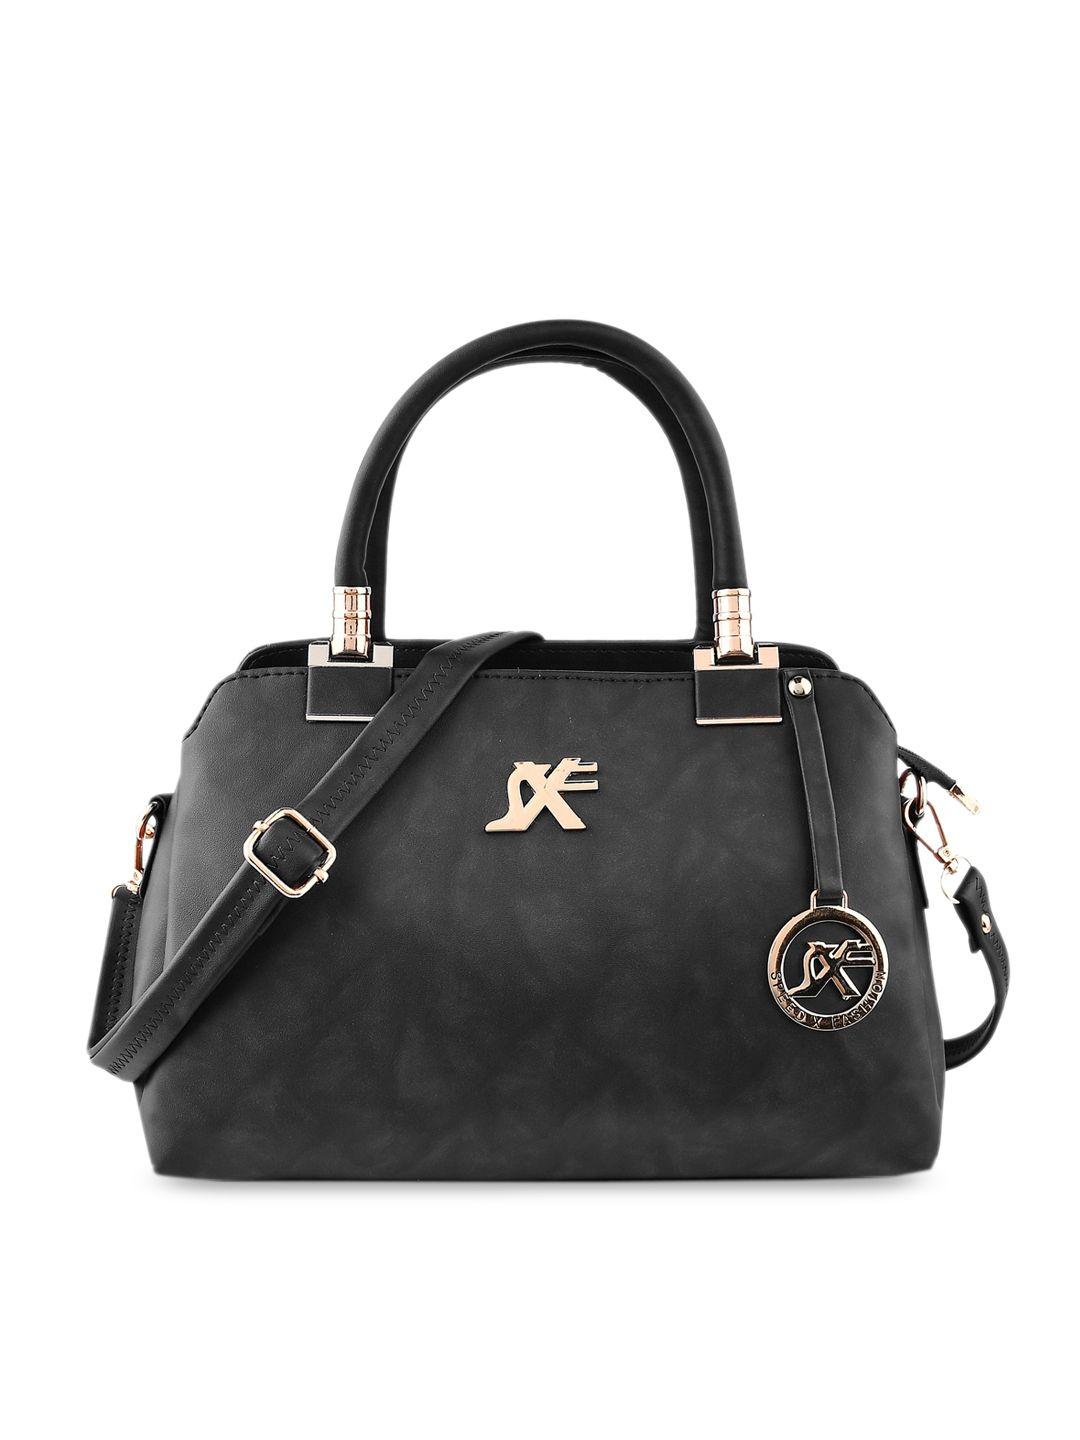 sxf speed x fashion black pu bowling handheld bag with applique